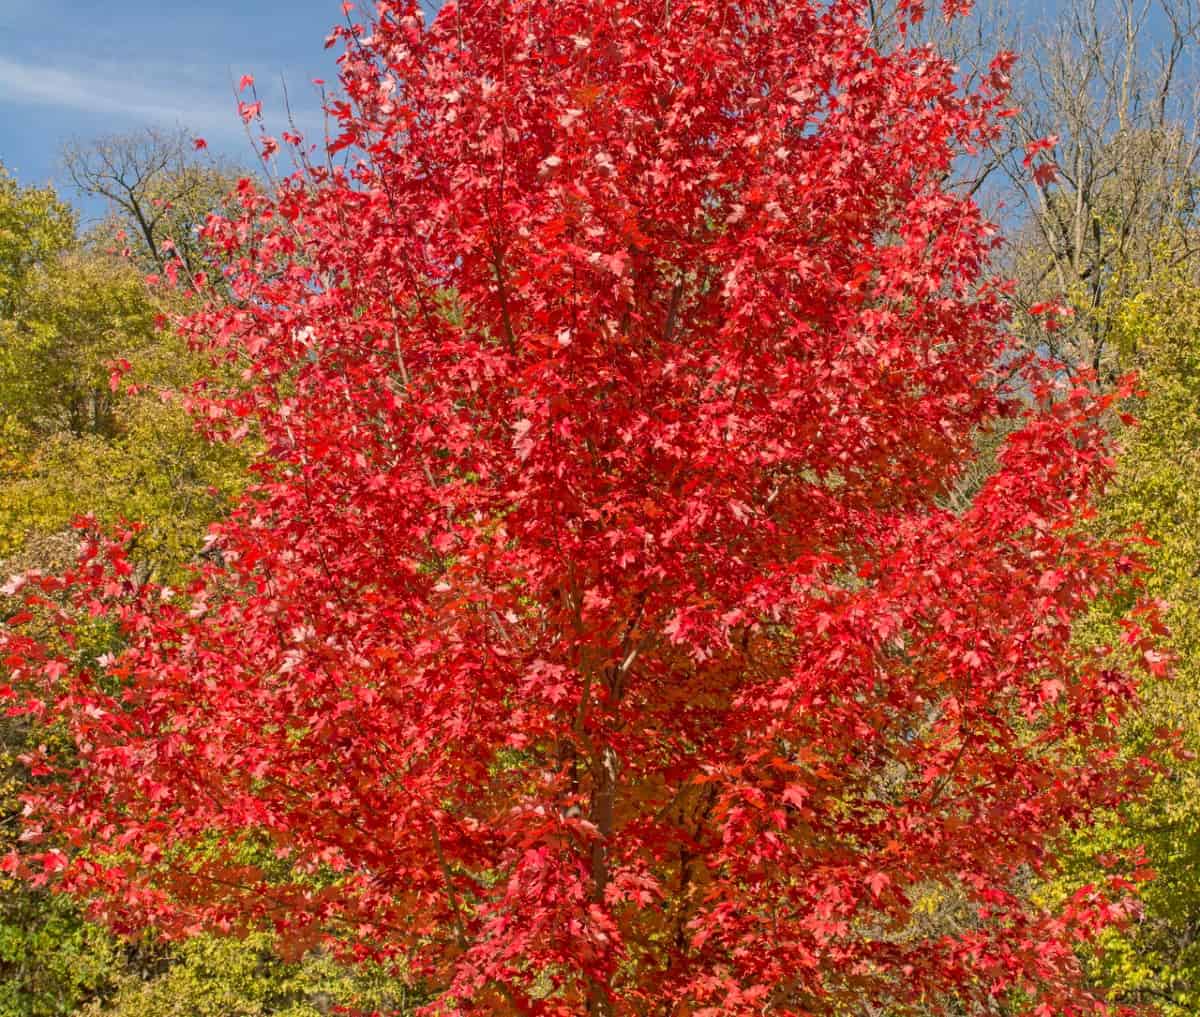 röda lönnträd är vackra under alla årstider.